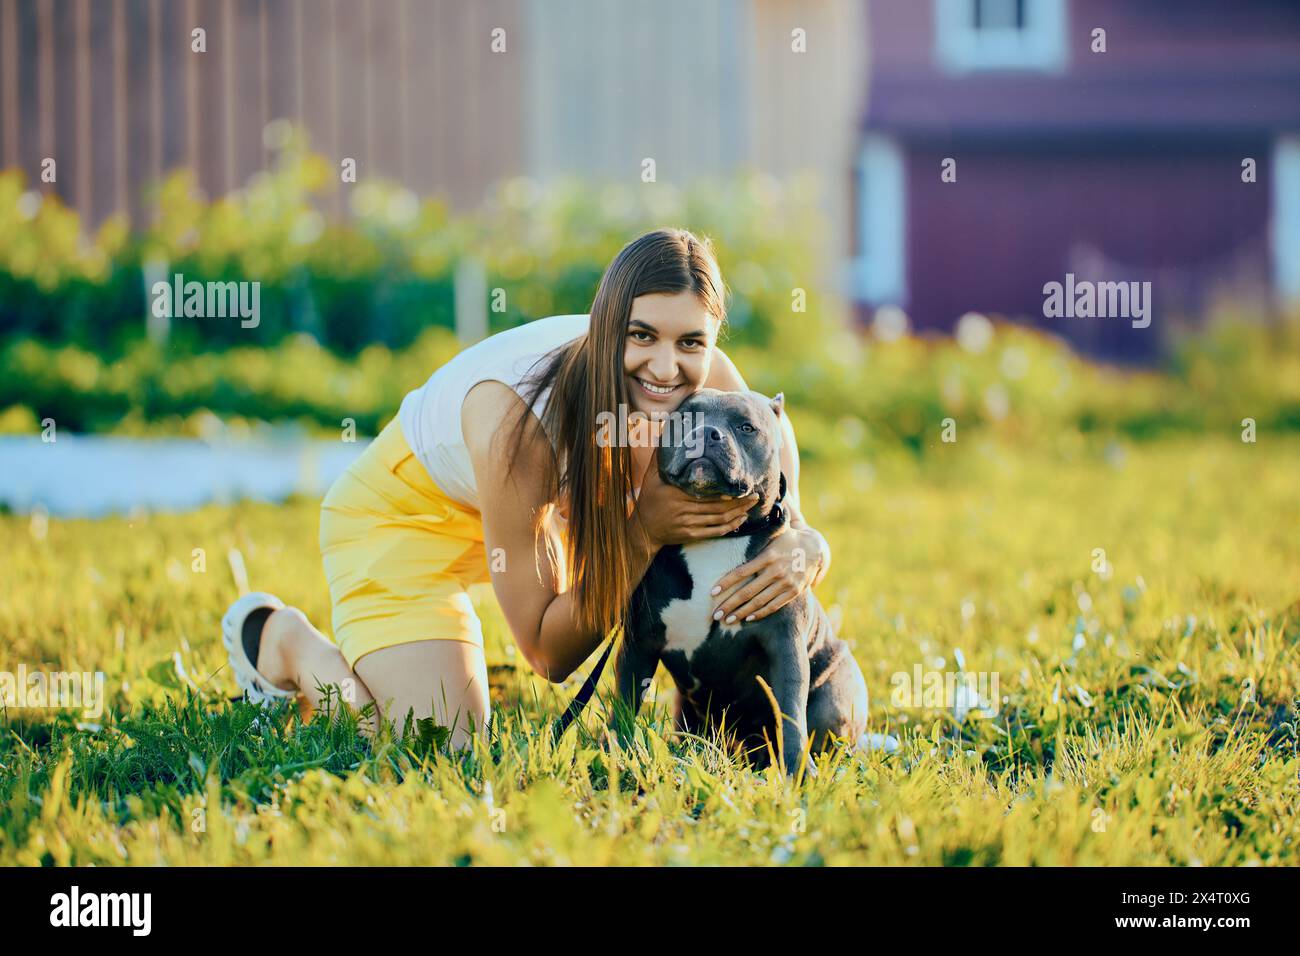 Die Besitzerin dreht den Hundekopf zur Kamera, um gemeinsame Fotos zu machen, sitzt am Sommerabend auf dem Rasen in der Nähe des Landhauses, die junge kaukasische Frau fotografiert mit einem A Stockfoto